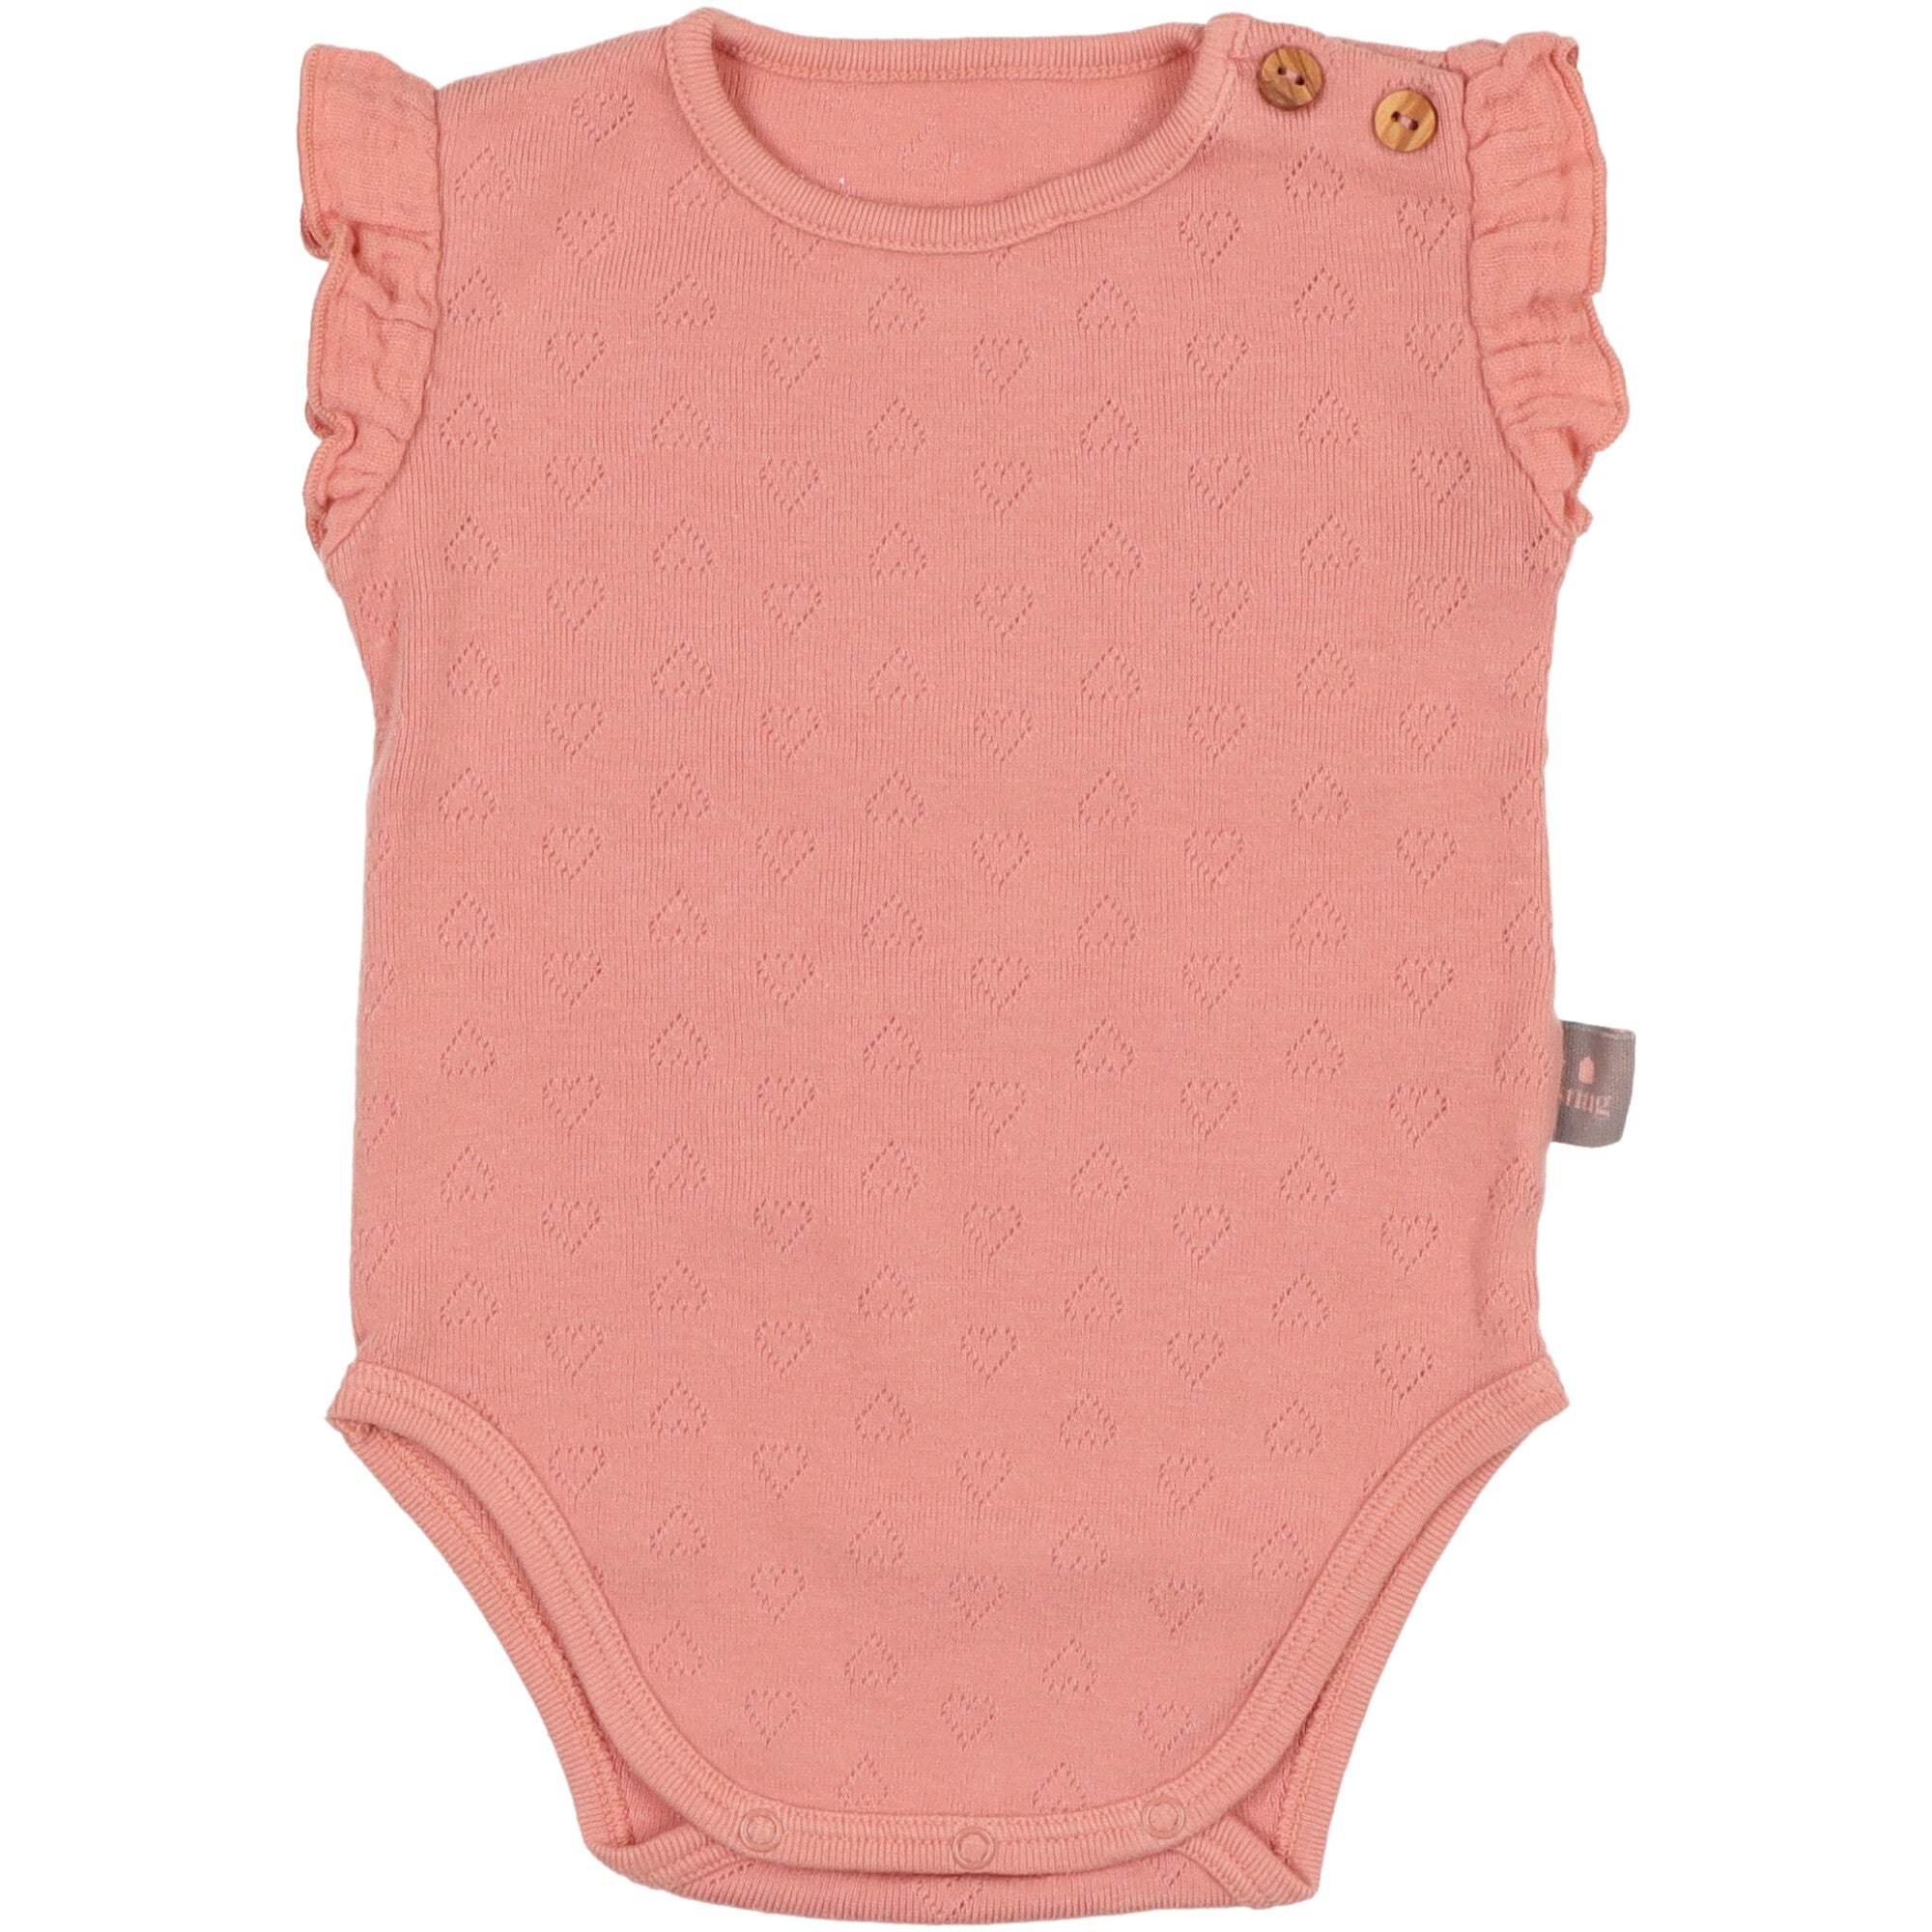 Body neonata colore Rosa / 1 mese